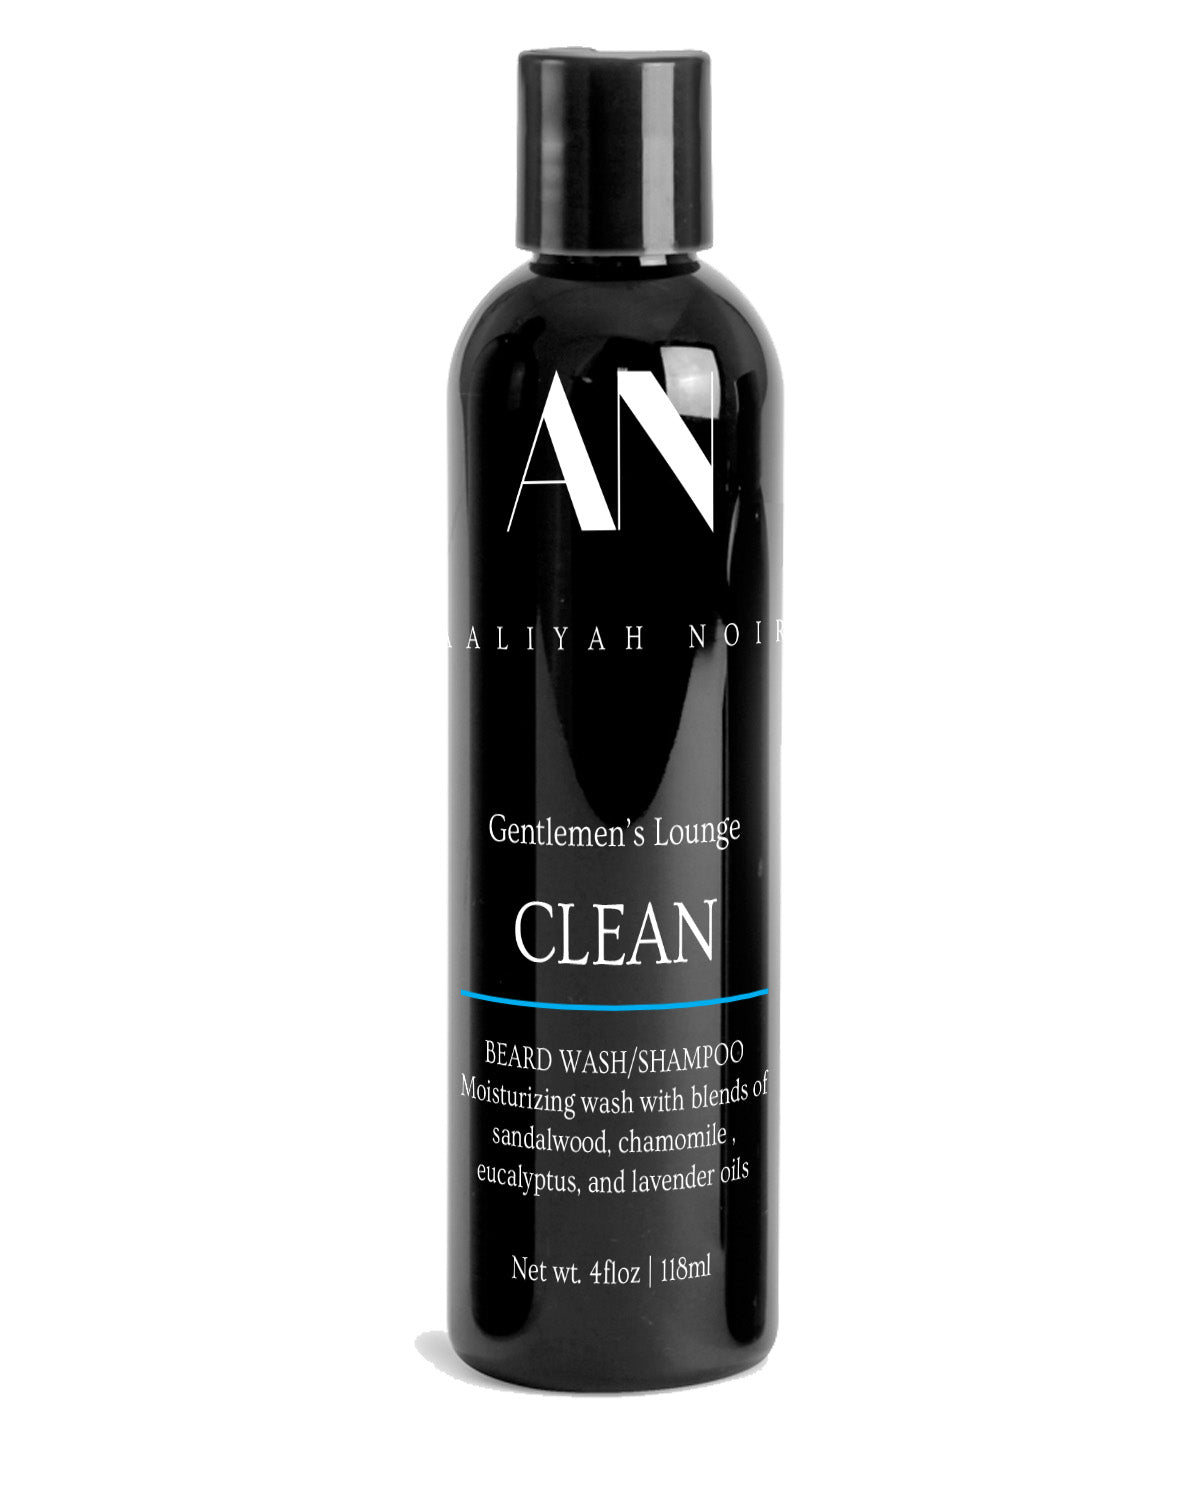 CLEAN Premium Beard Wash/Shampoo